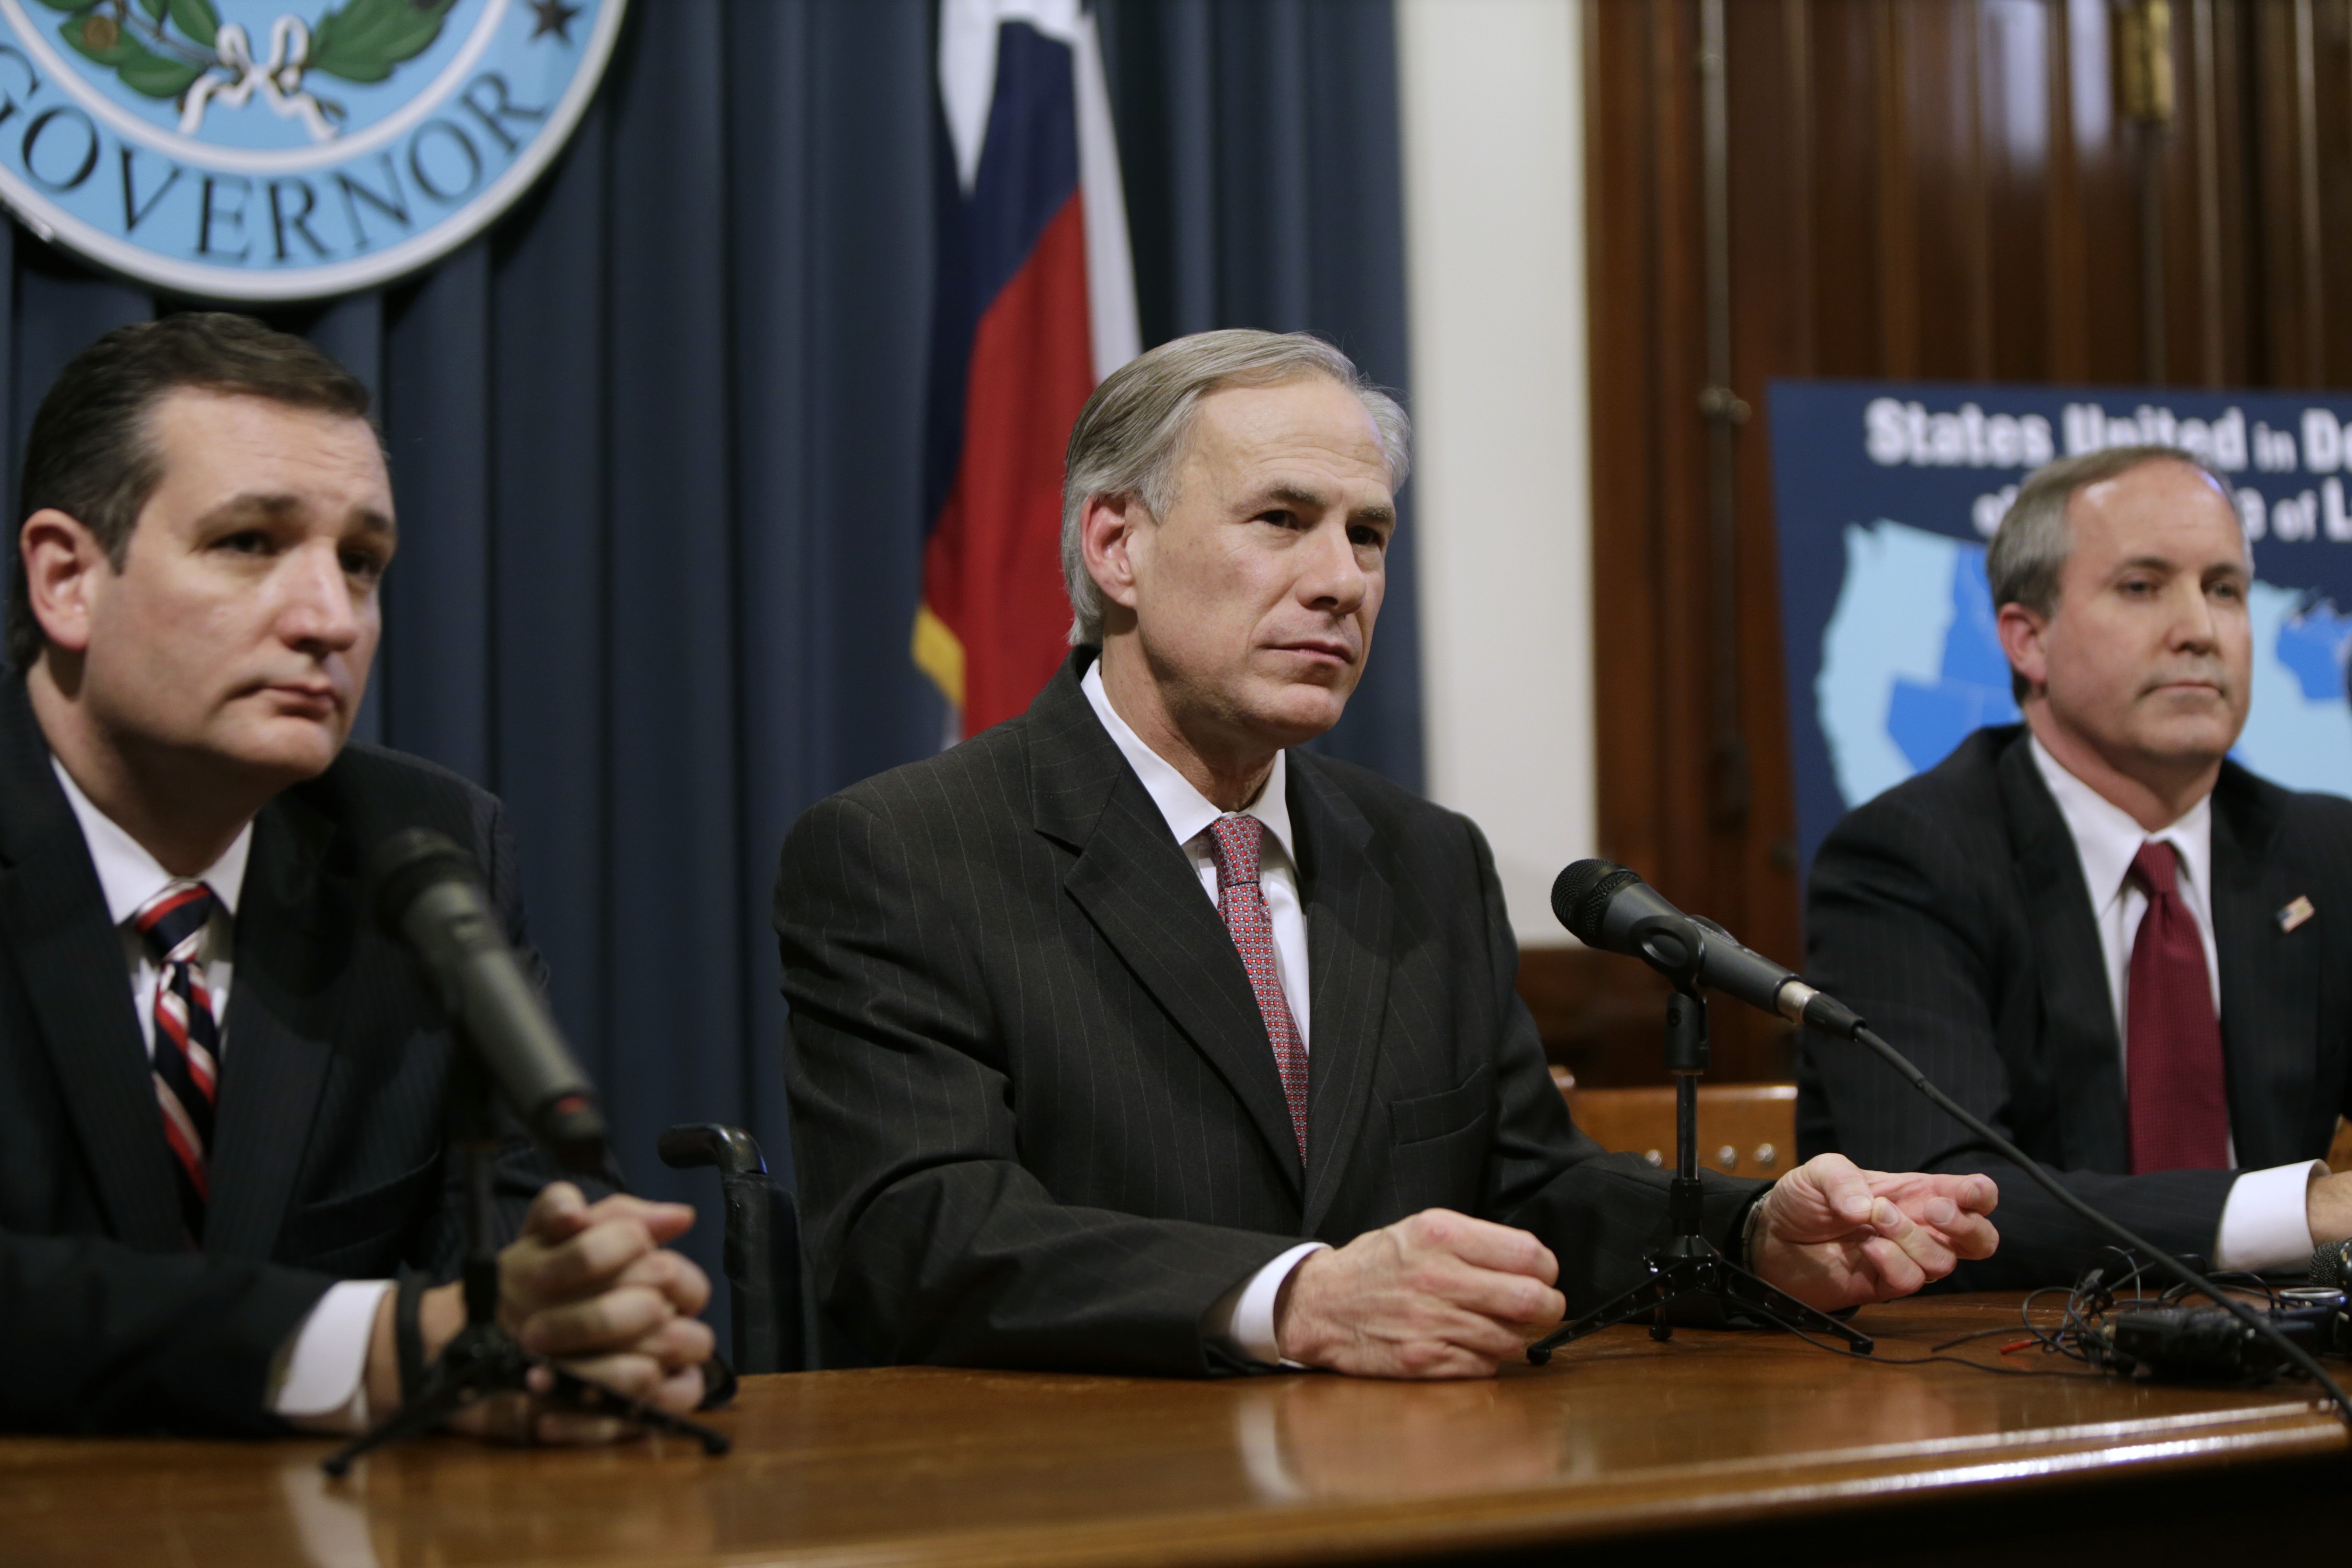 U.S. Sen. Ted Cruz, Texas Gov. Greg Abbott, and Texas Attorney General Ken Paxton.